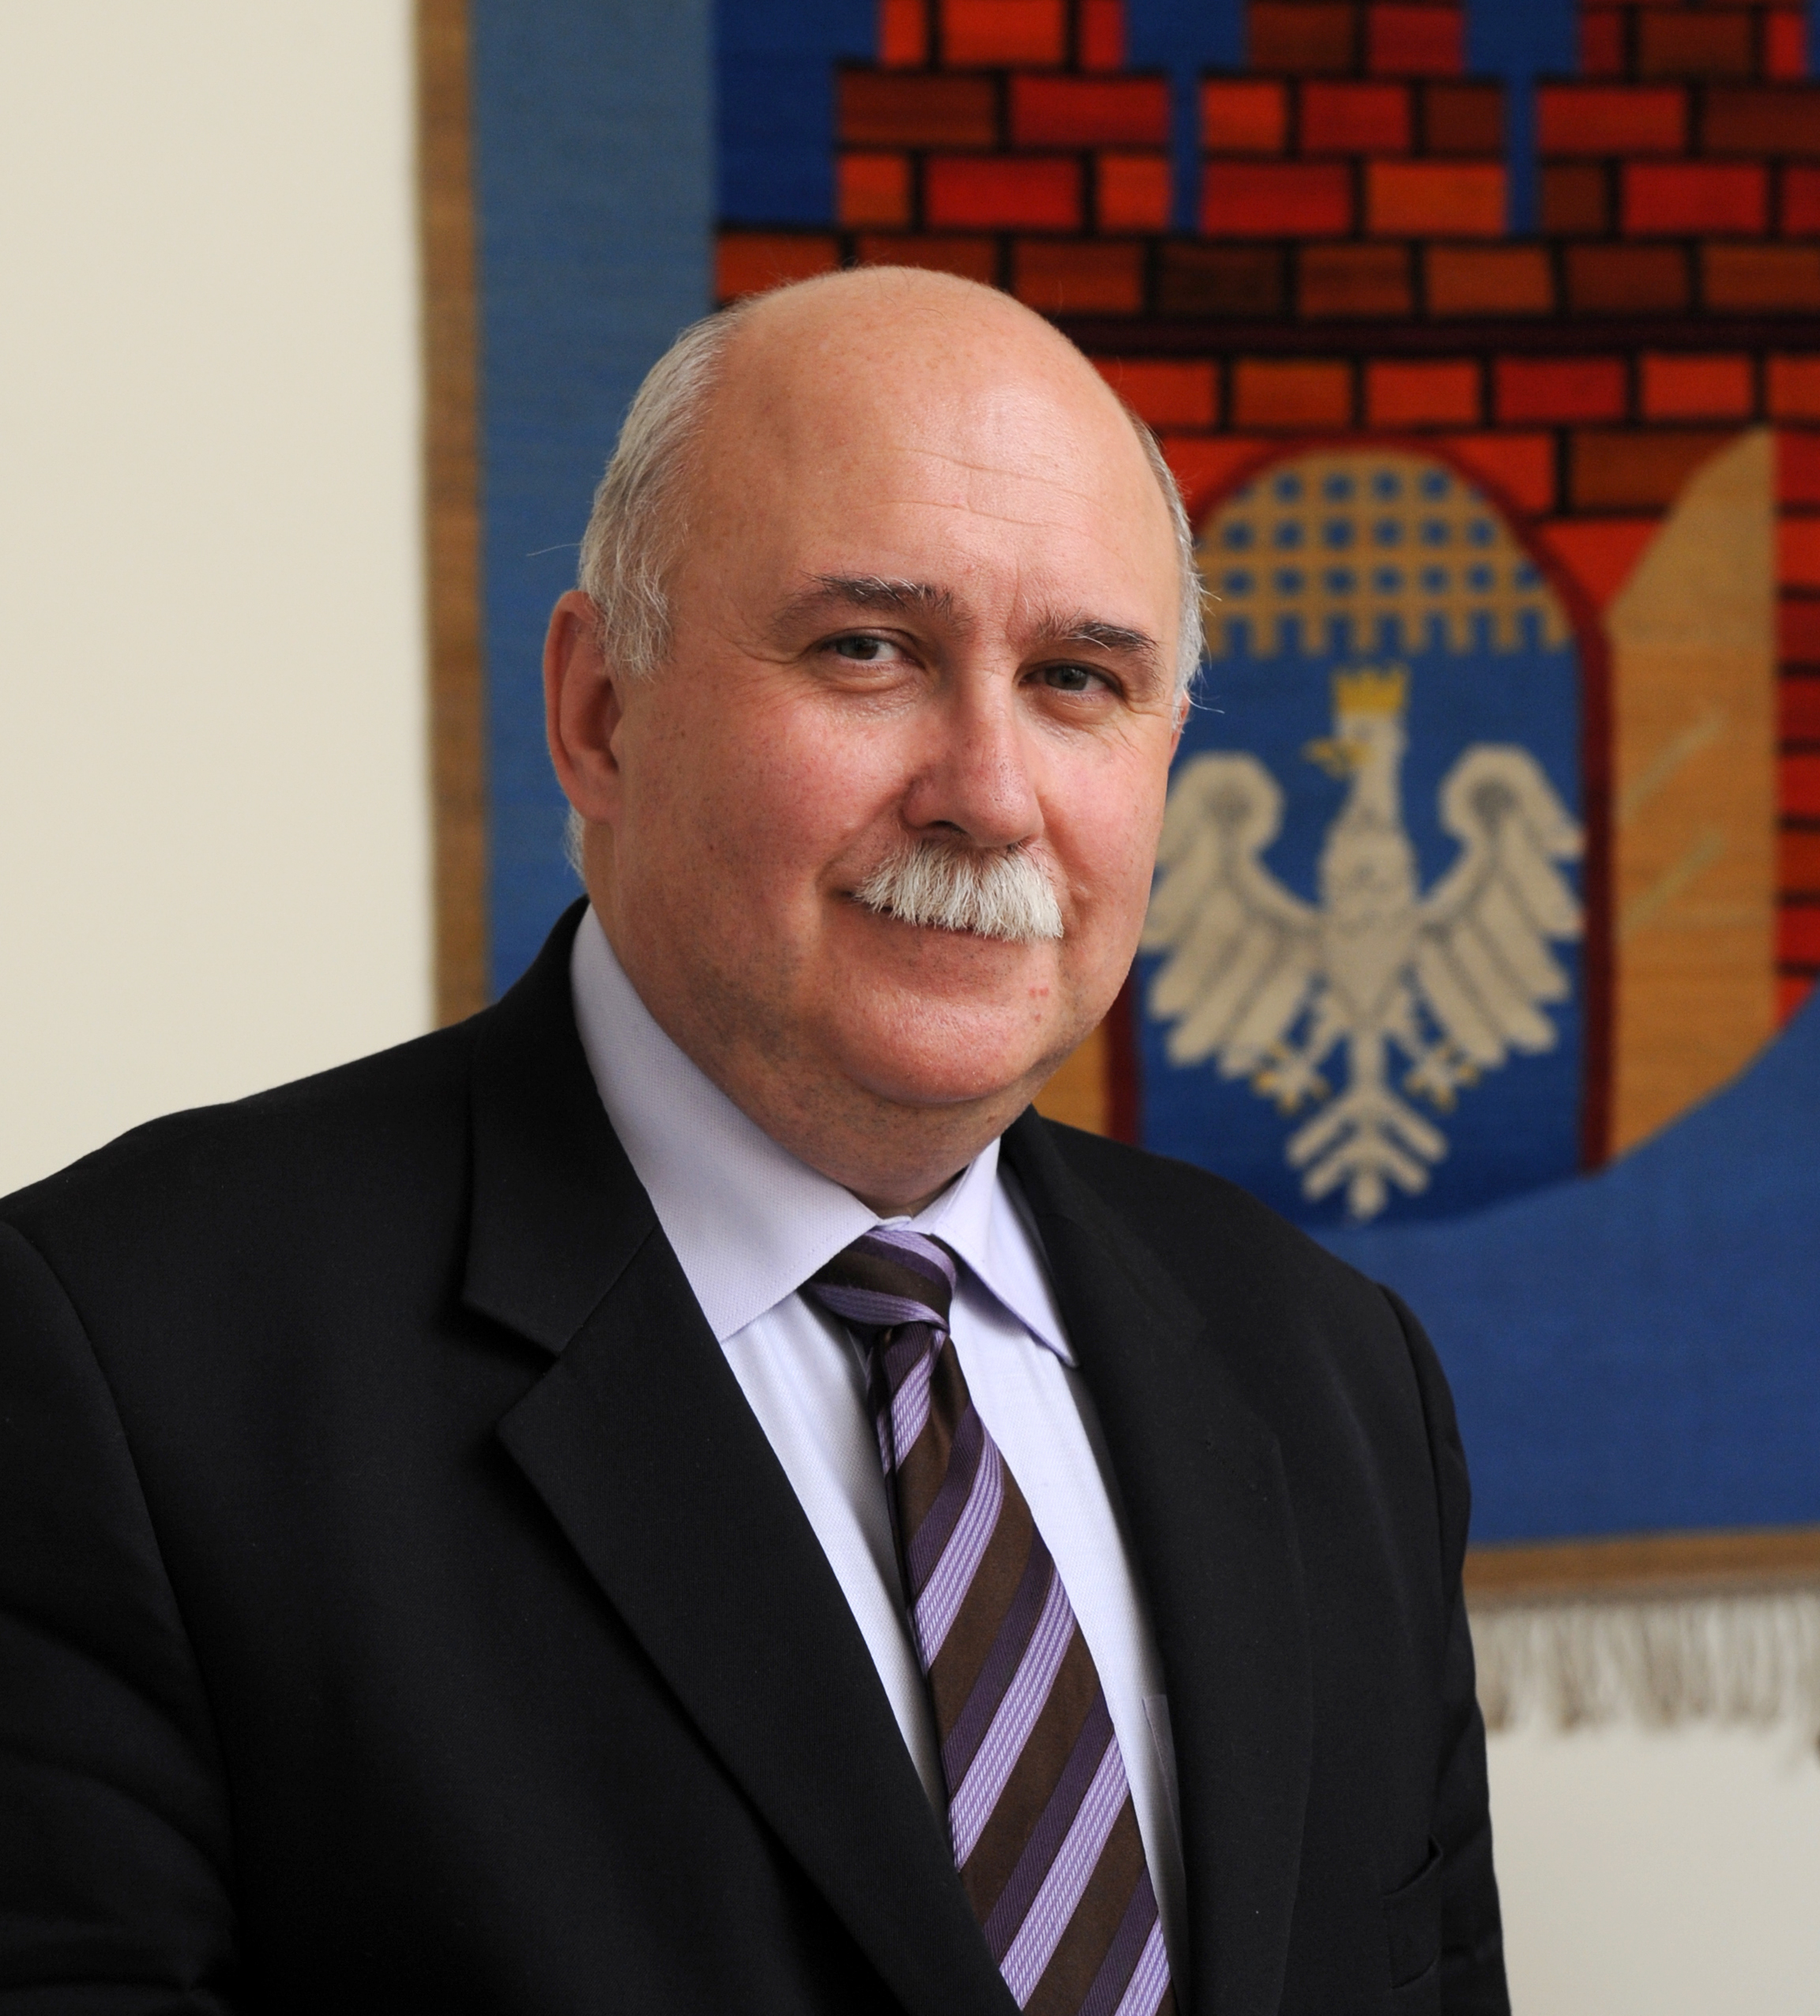  Bogusław Kośmider – Przewodniczący Rady Miasta Krakowa 